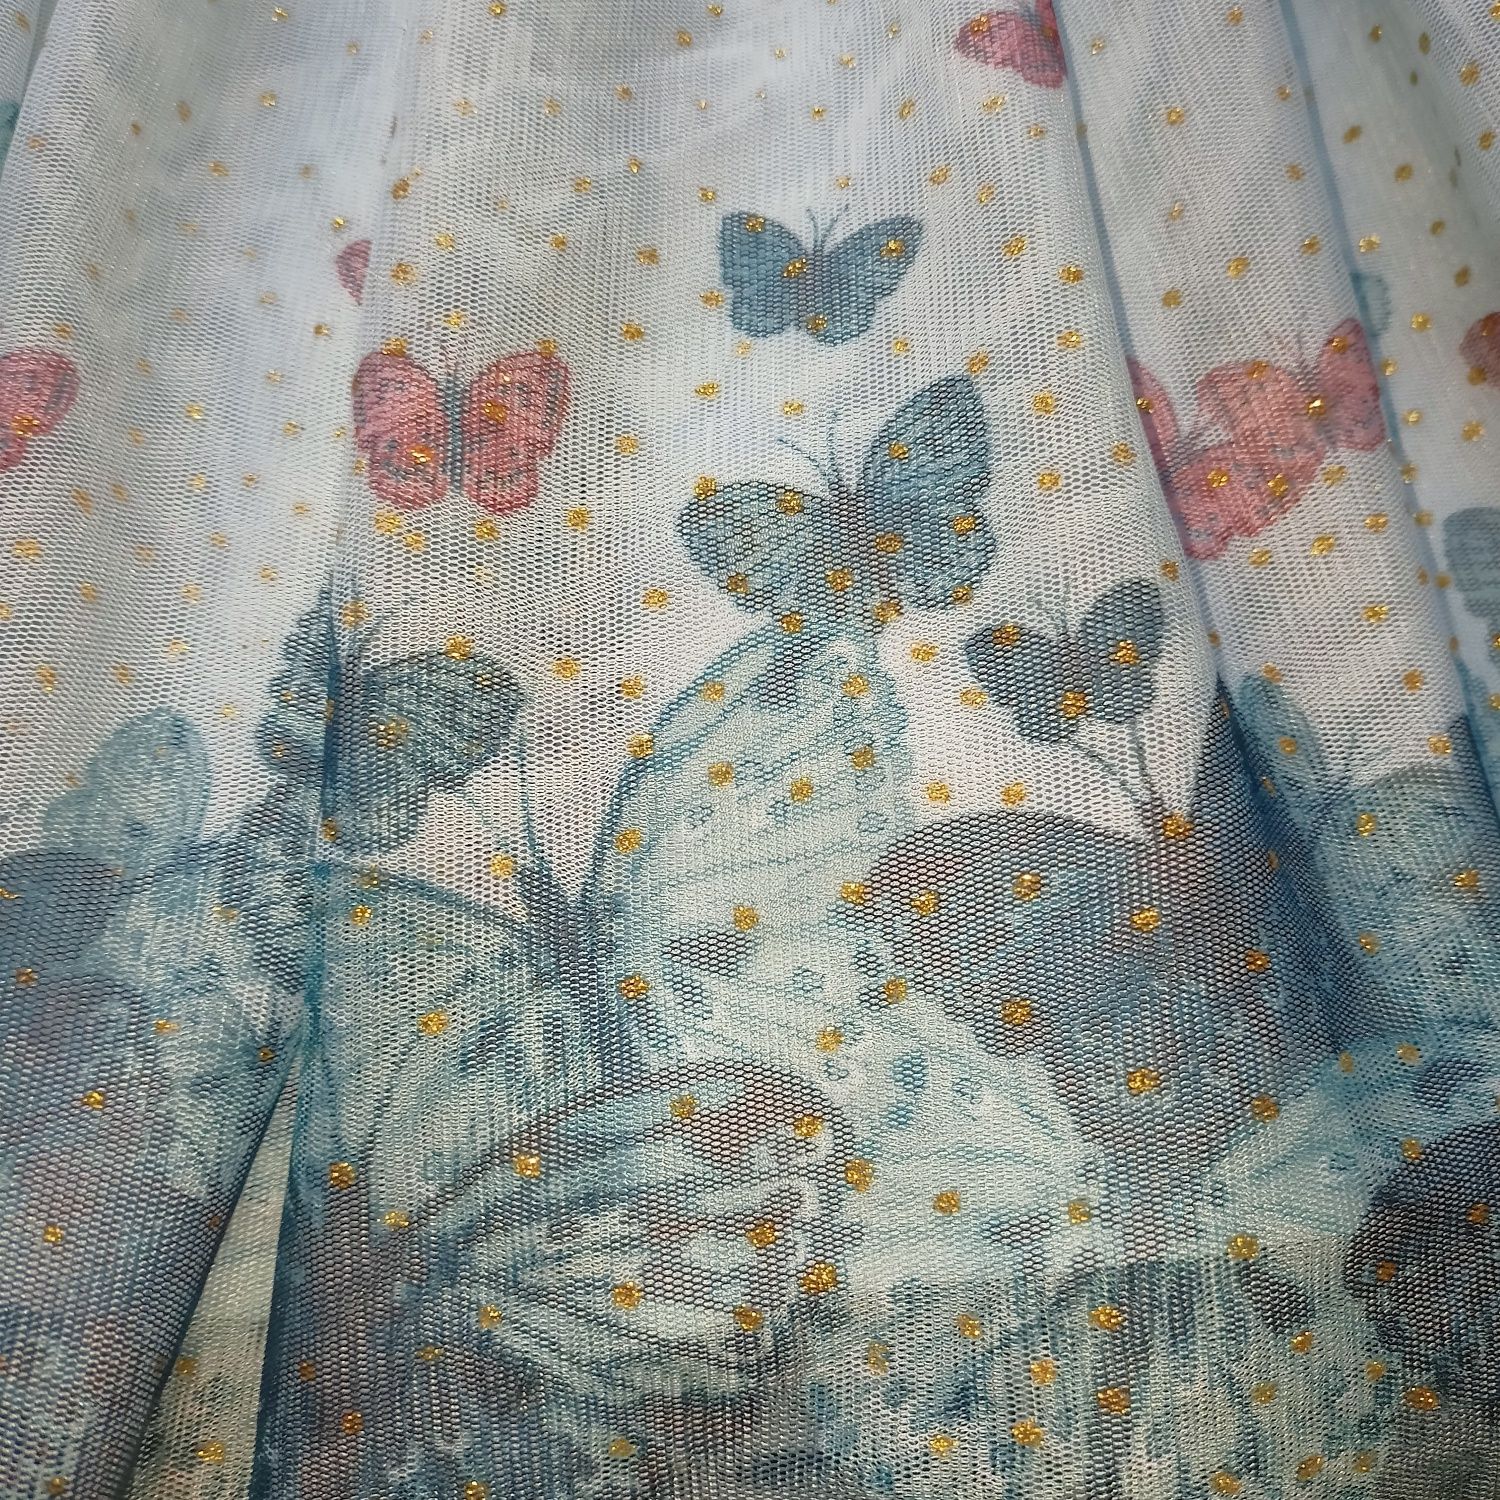 122 128 H&M spódnica spódniczka tiulowa tutu dziewczęca motyle motyl